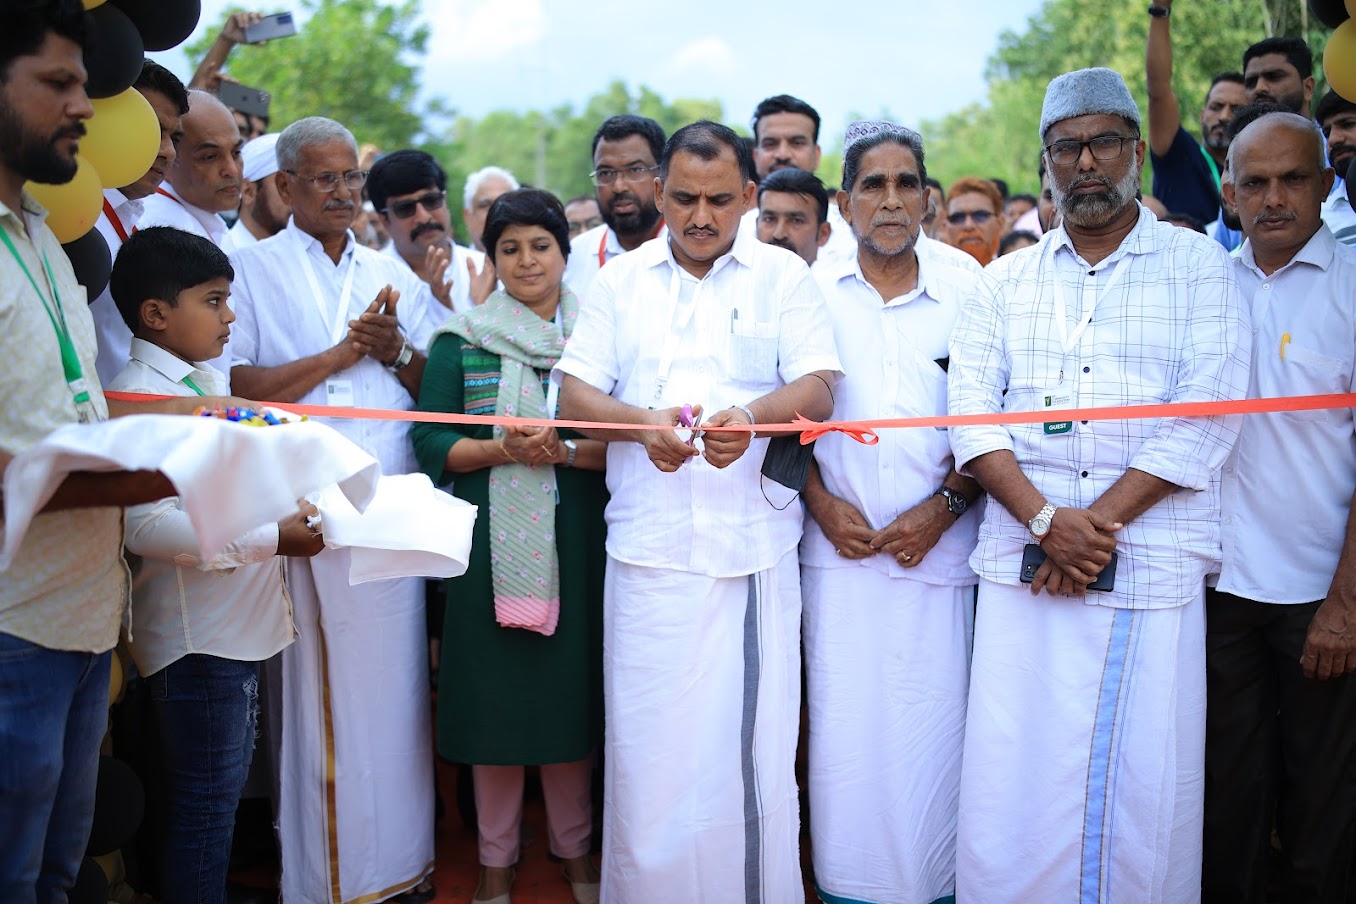 Manjeshwar: My Community Foundation inaugurates 10 new houses for economically backward families